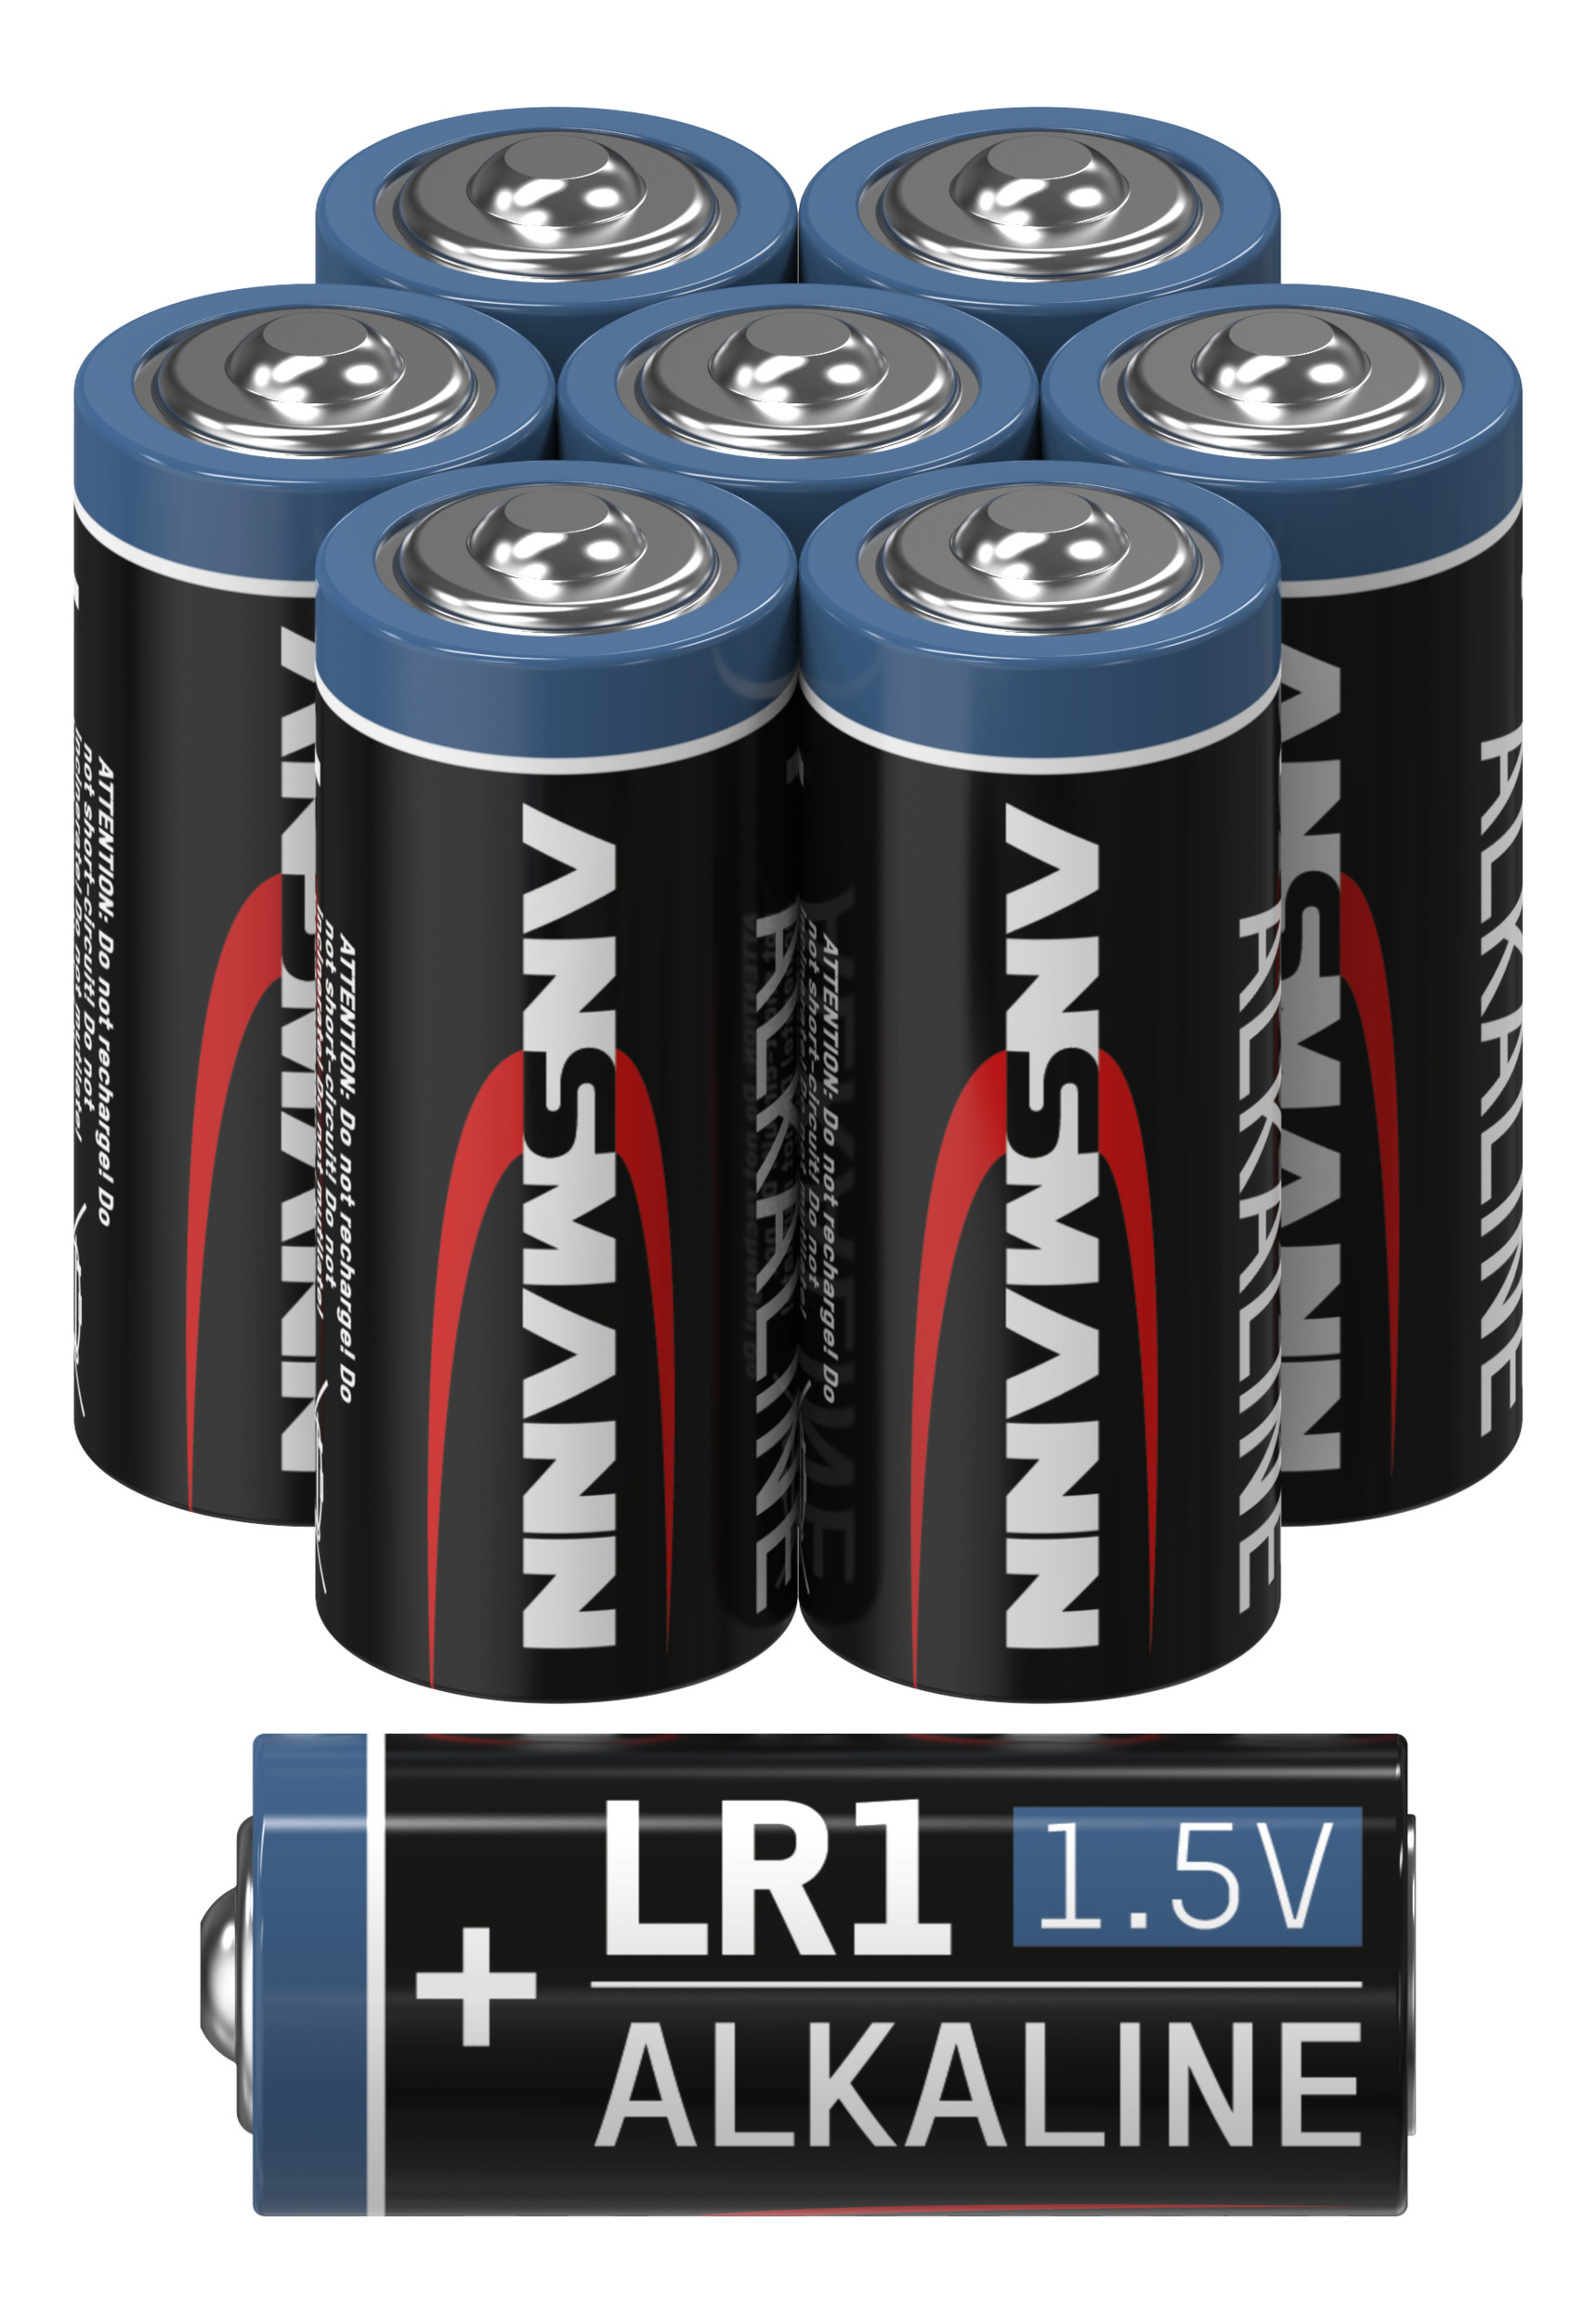 Volt ANSMANN Batterie, Alkaline Stück) 1,5V (8 Spezialbatterien LR1 1.5 Spezialbatterie